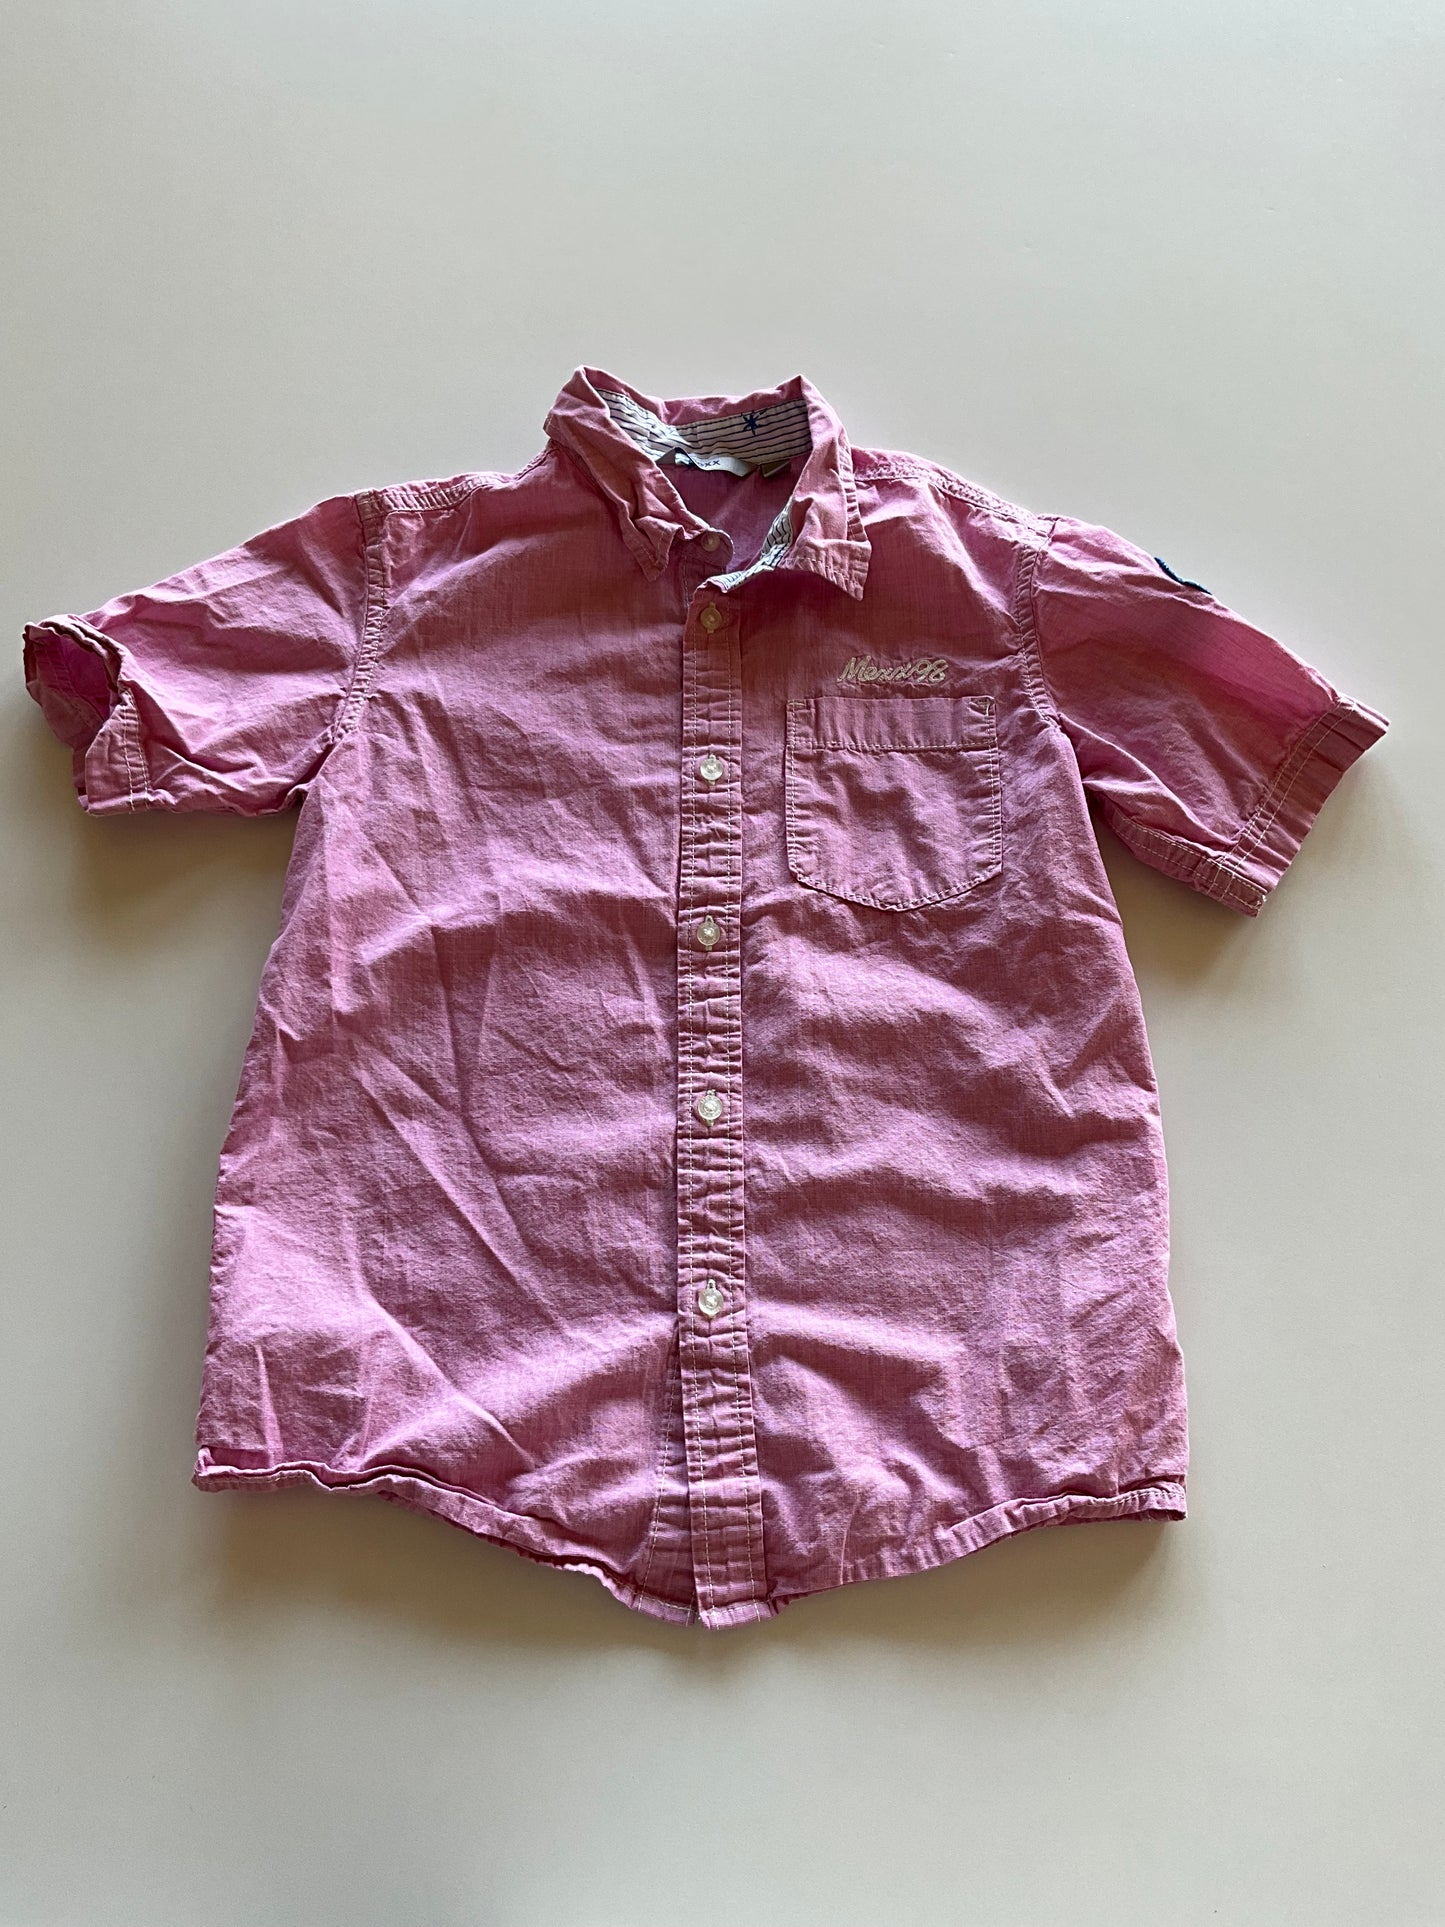 Pink Button Up Shirt